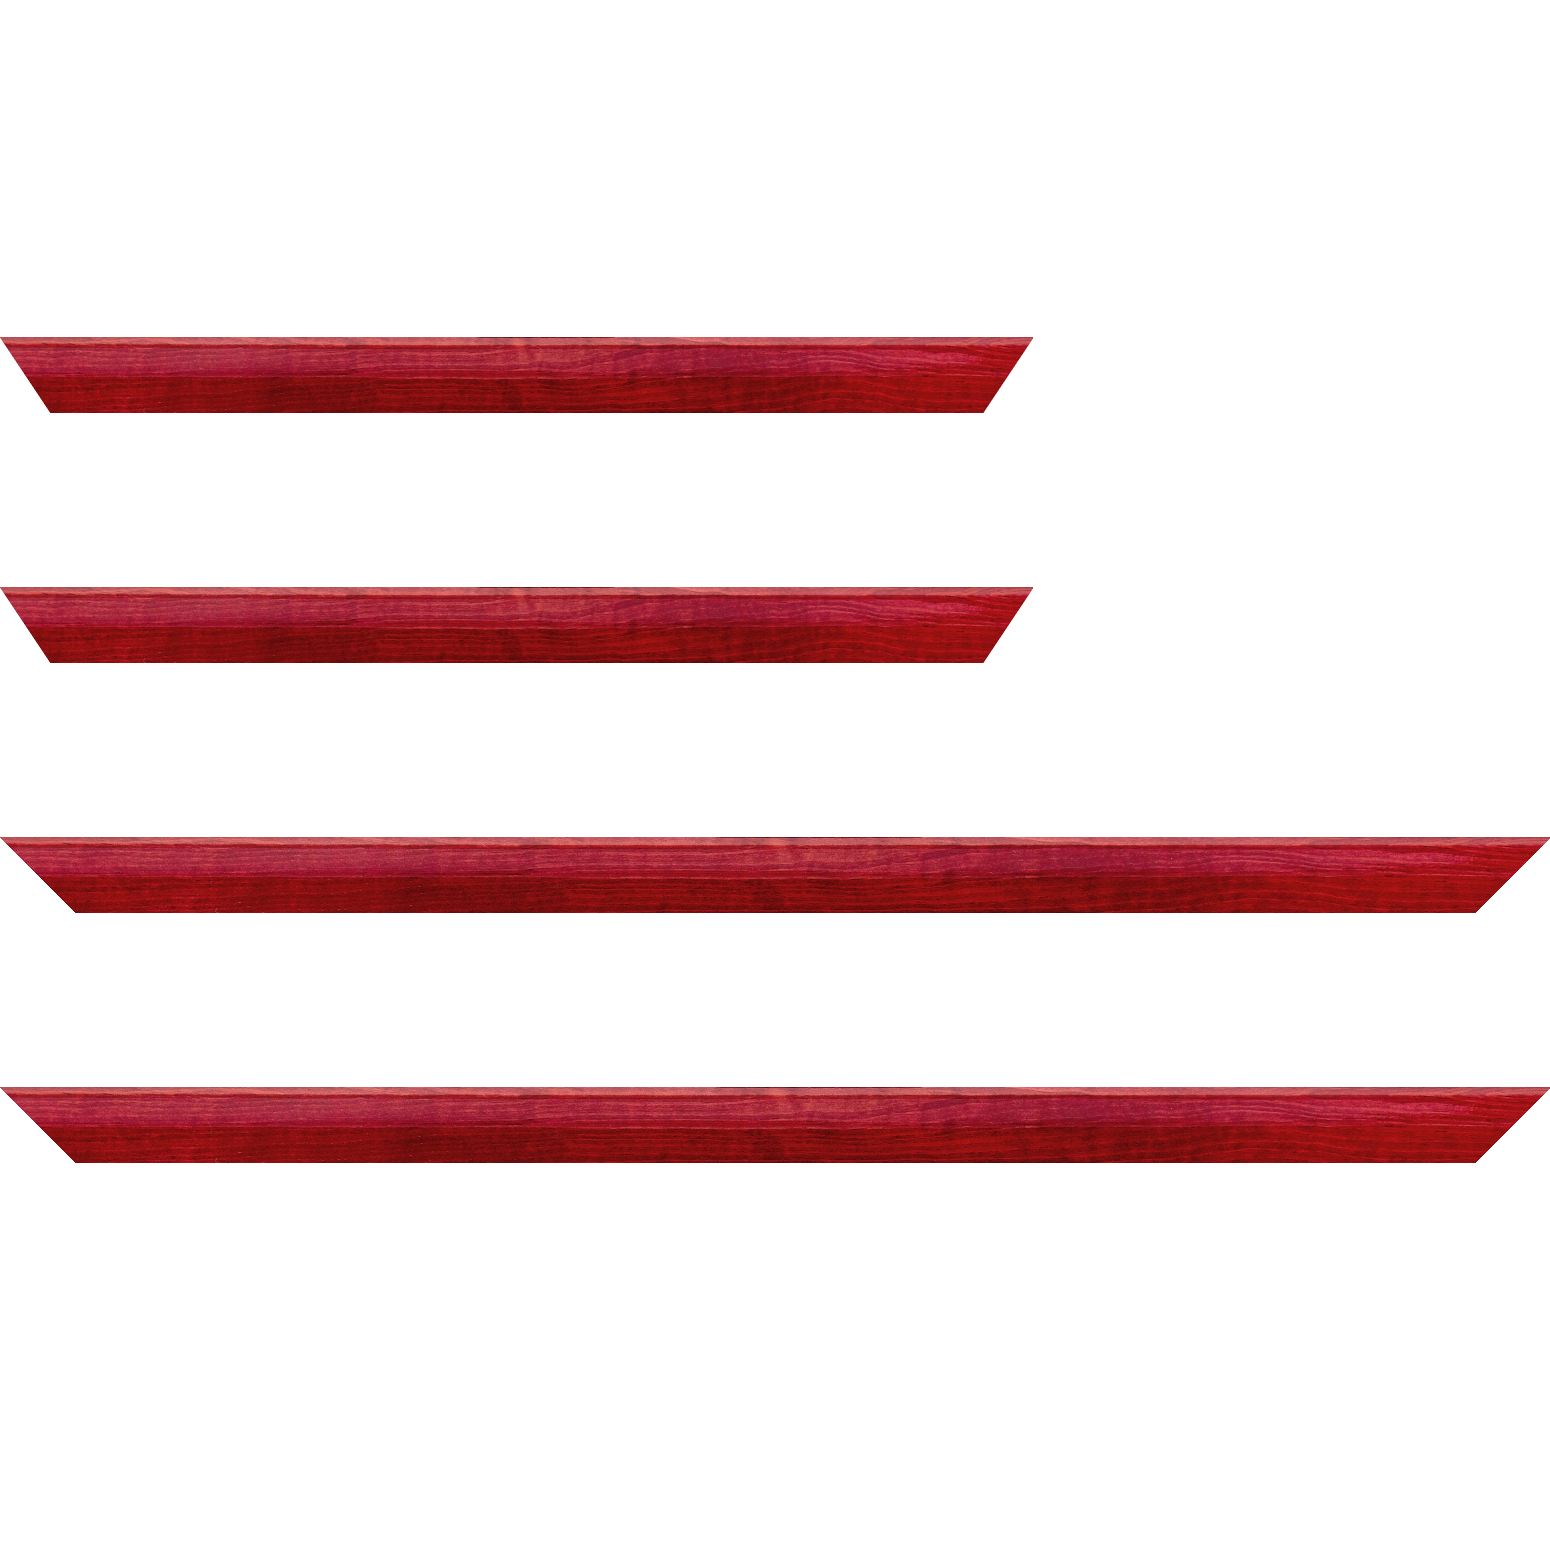 Baguette service précoupé bois profil arrondi en pente plongeant largeur 2.4cm couleur rouge cerise finition vernis brillant,veine du bois  apparent (pin) ,